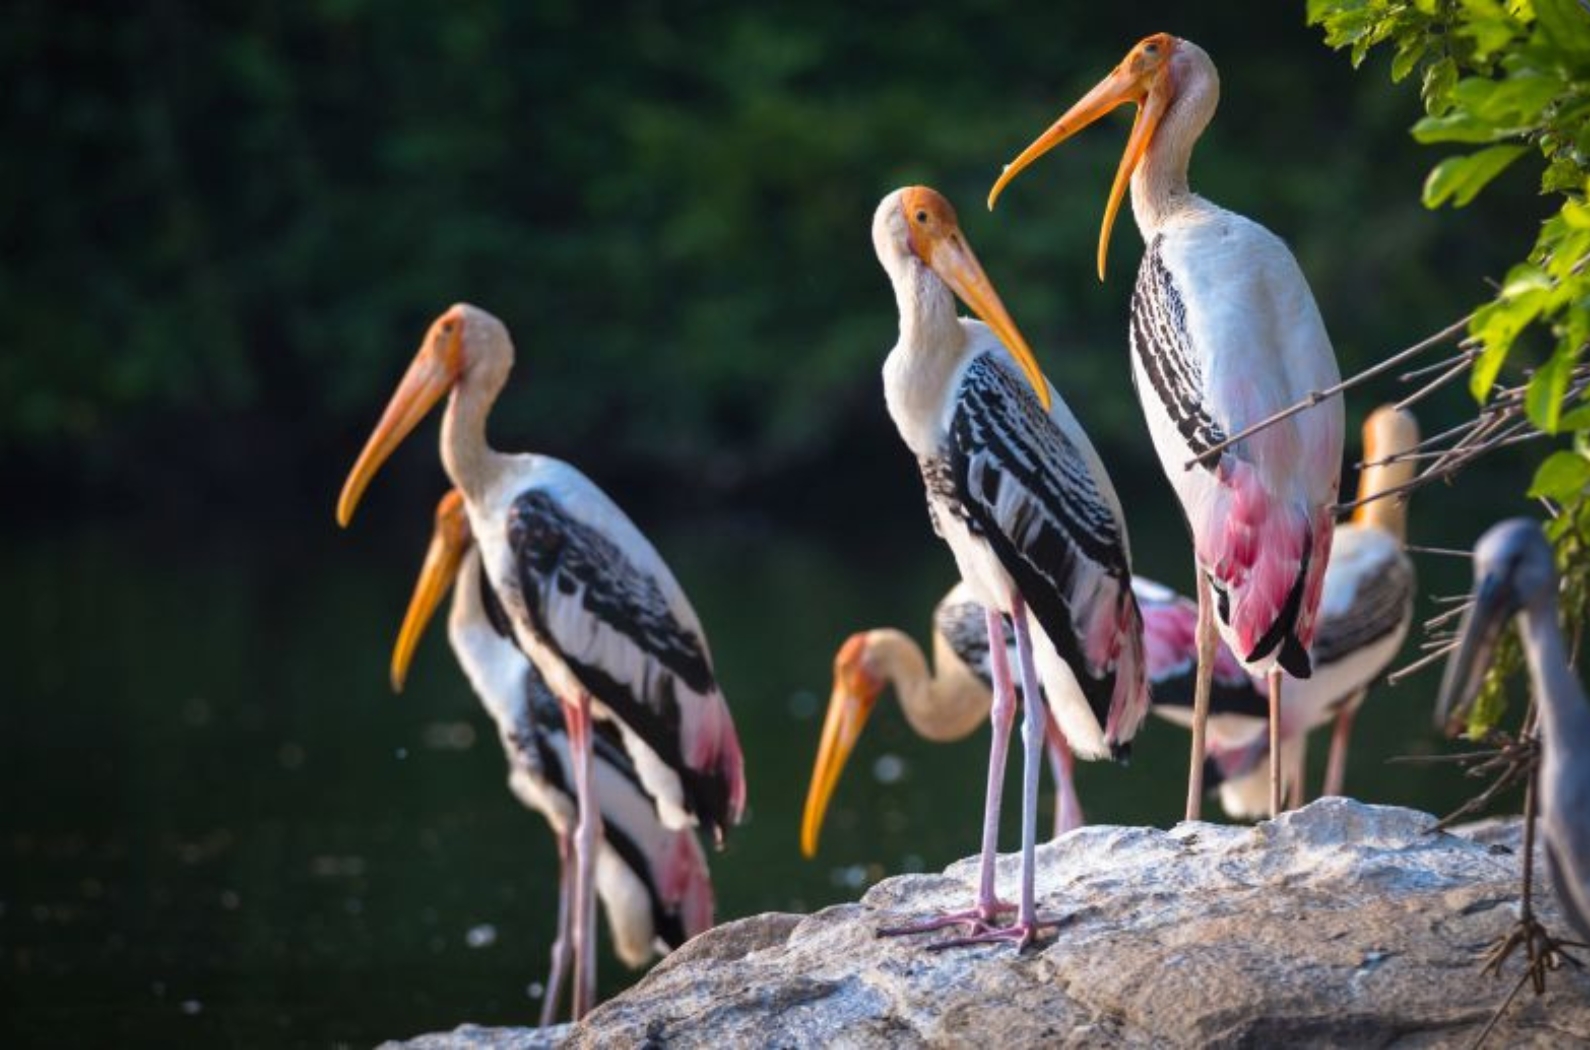 Nalbana Bird Sanctuary